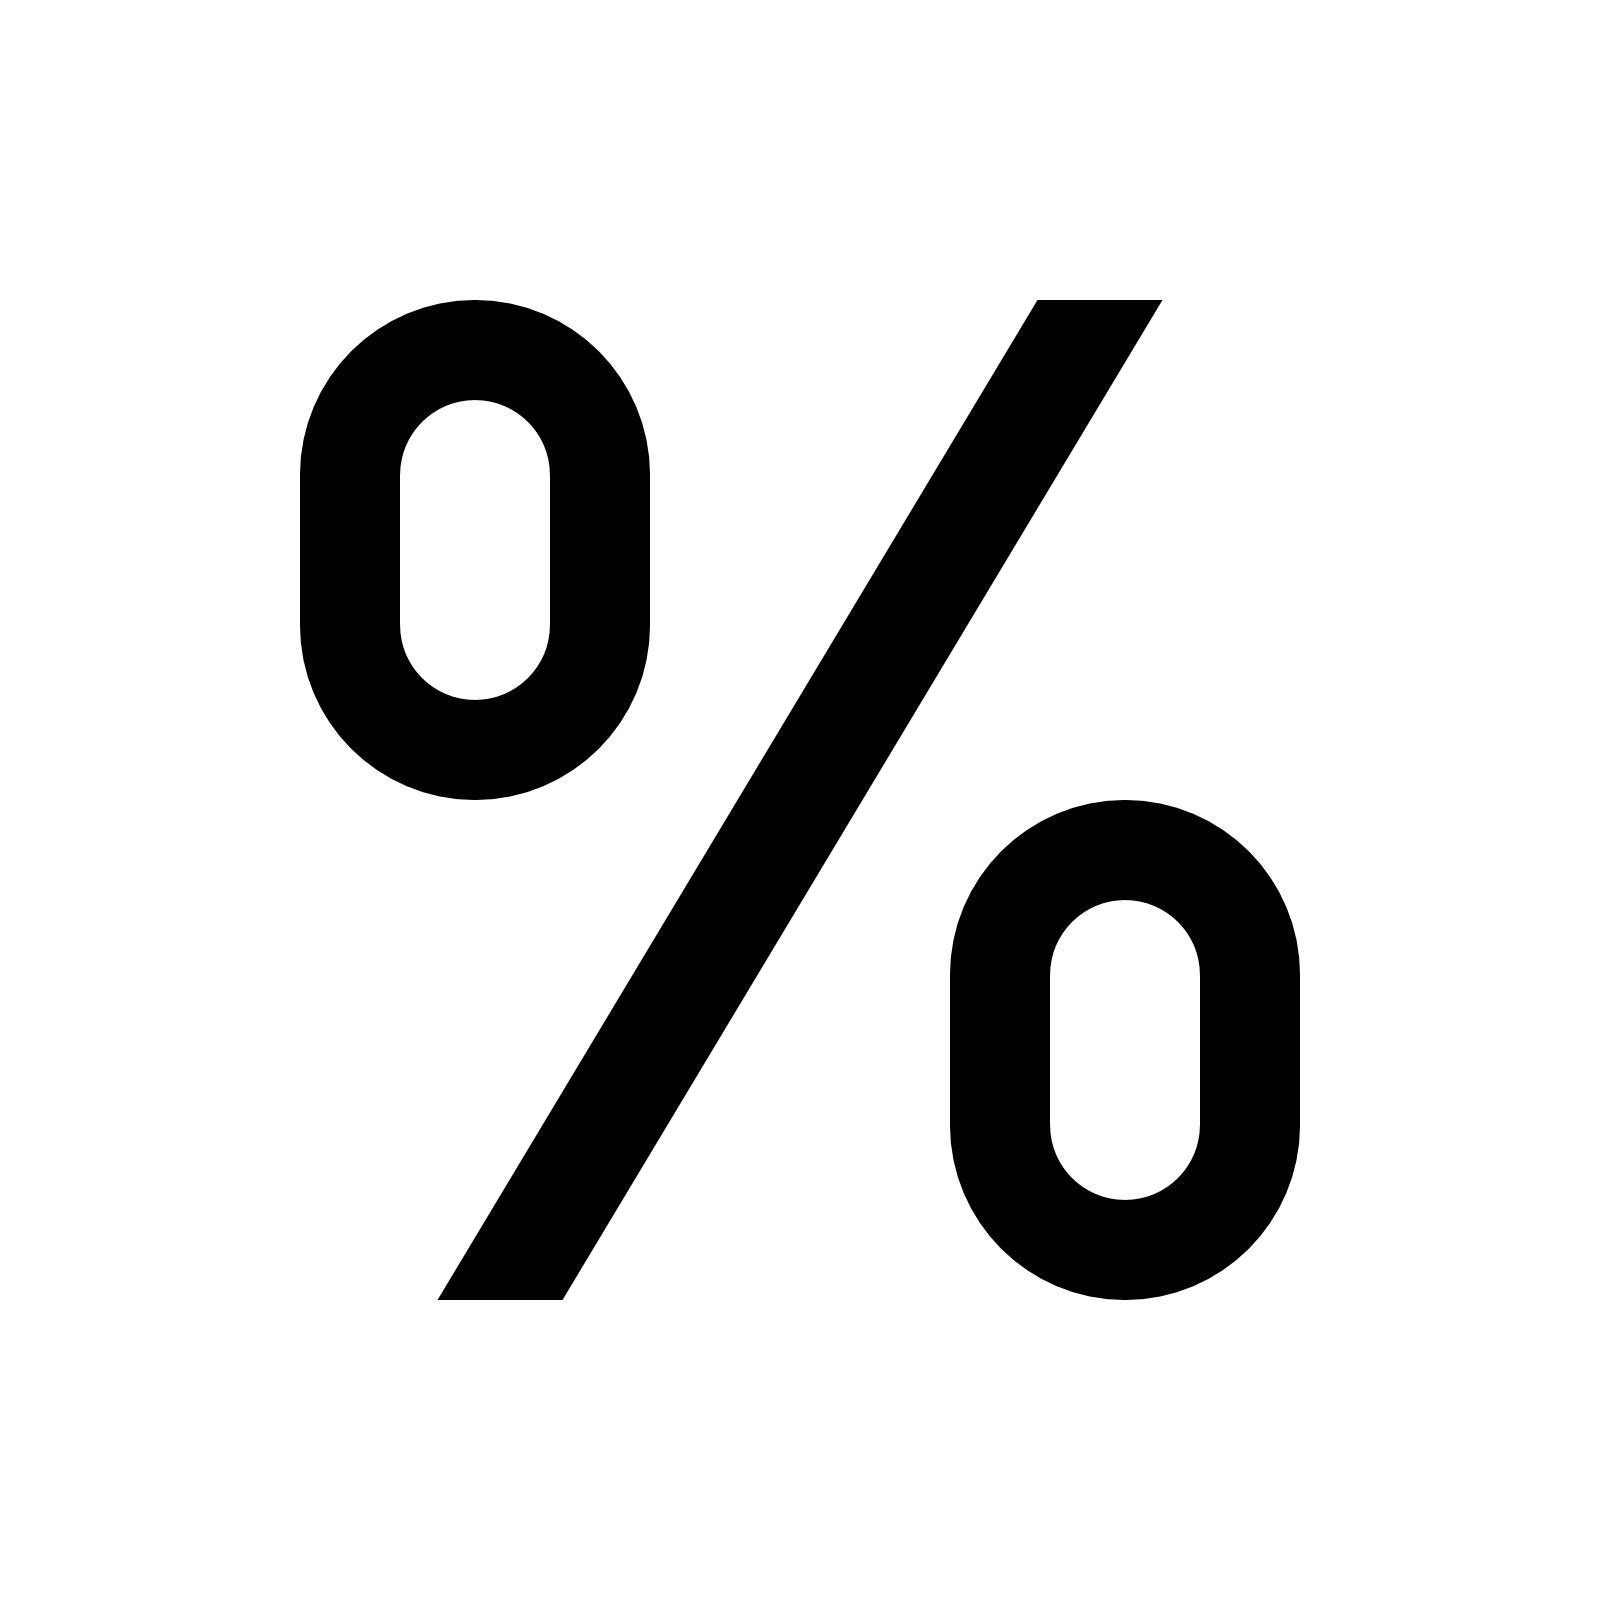 Porcentaje PNG